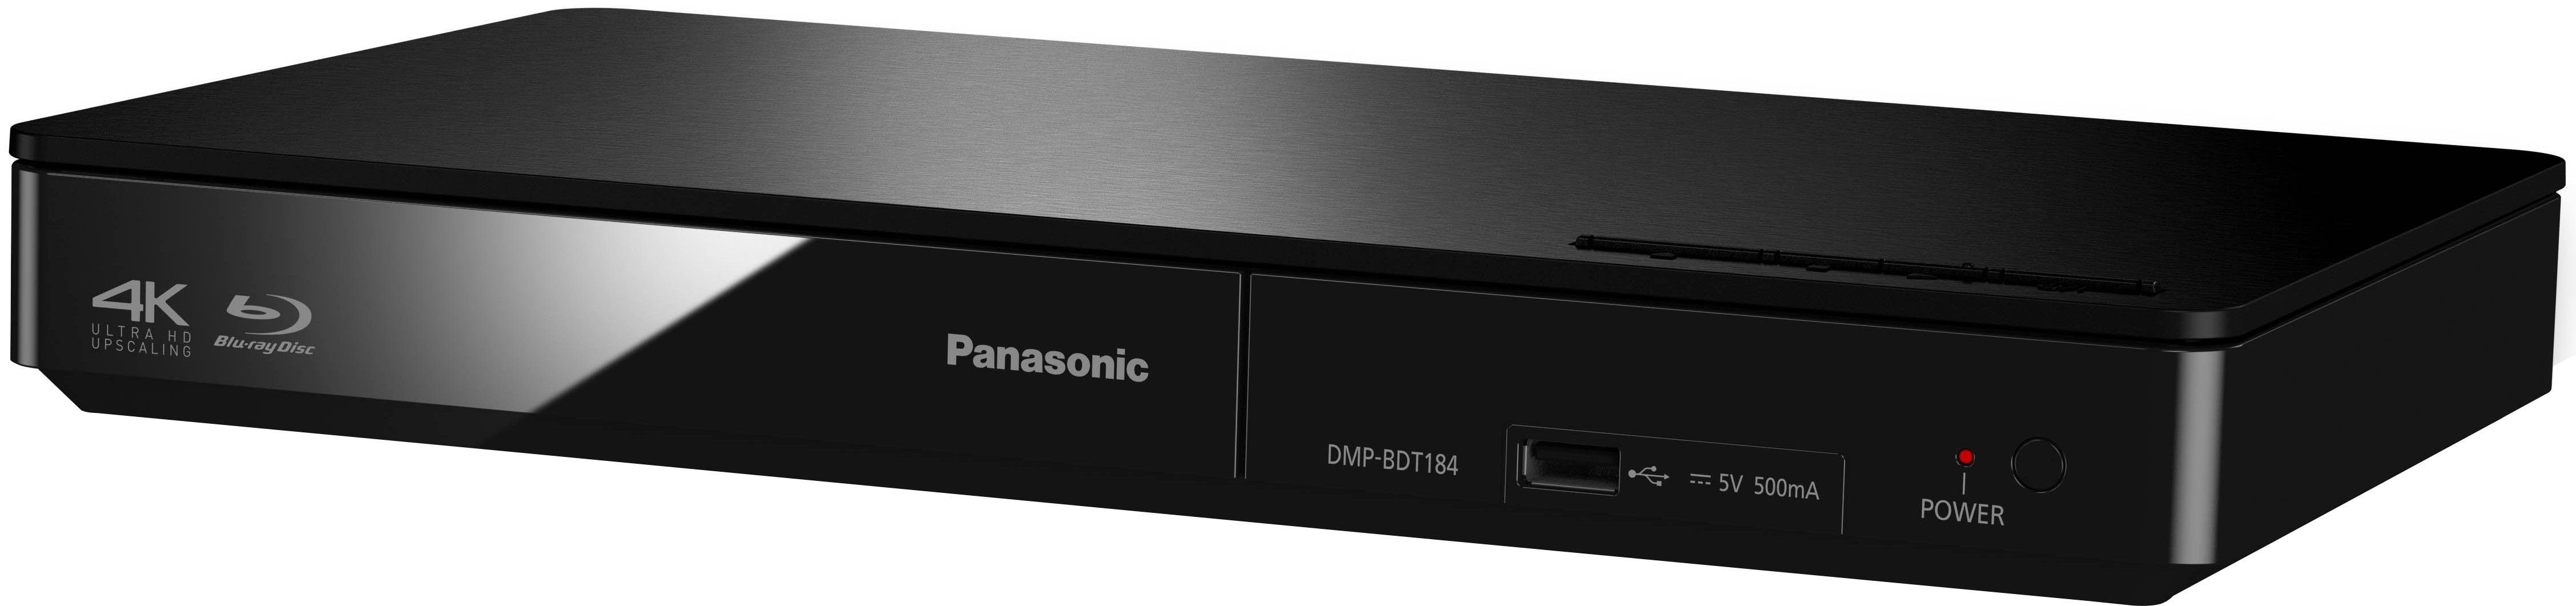 Panasonic DMP-BDT184 / DMP-BDT185 Blu-ray-Player (LAN (Ethernet), 4K Upscaling, Schnellstart-Modus) schwarz